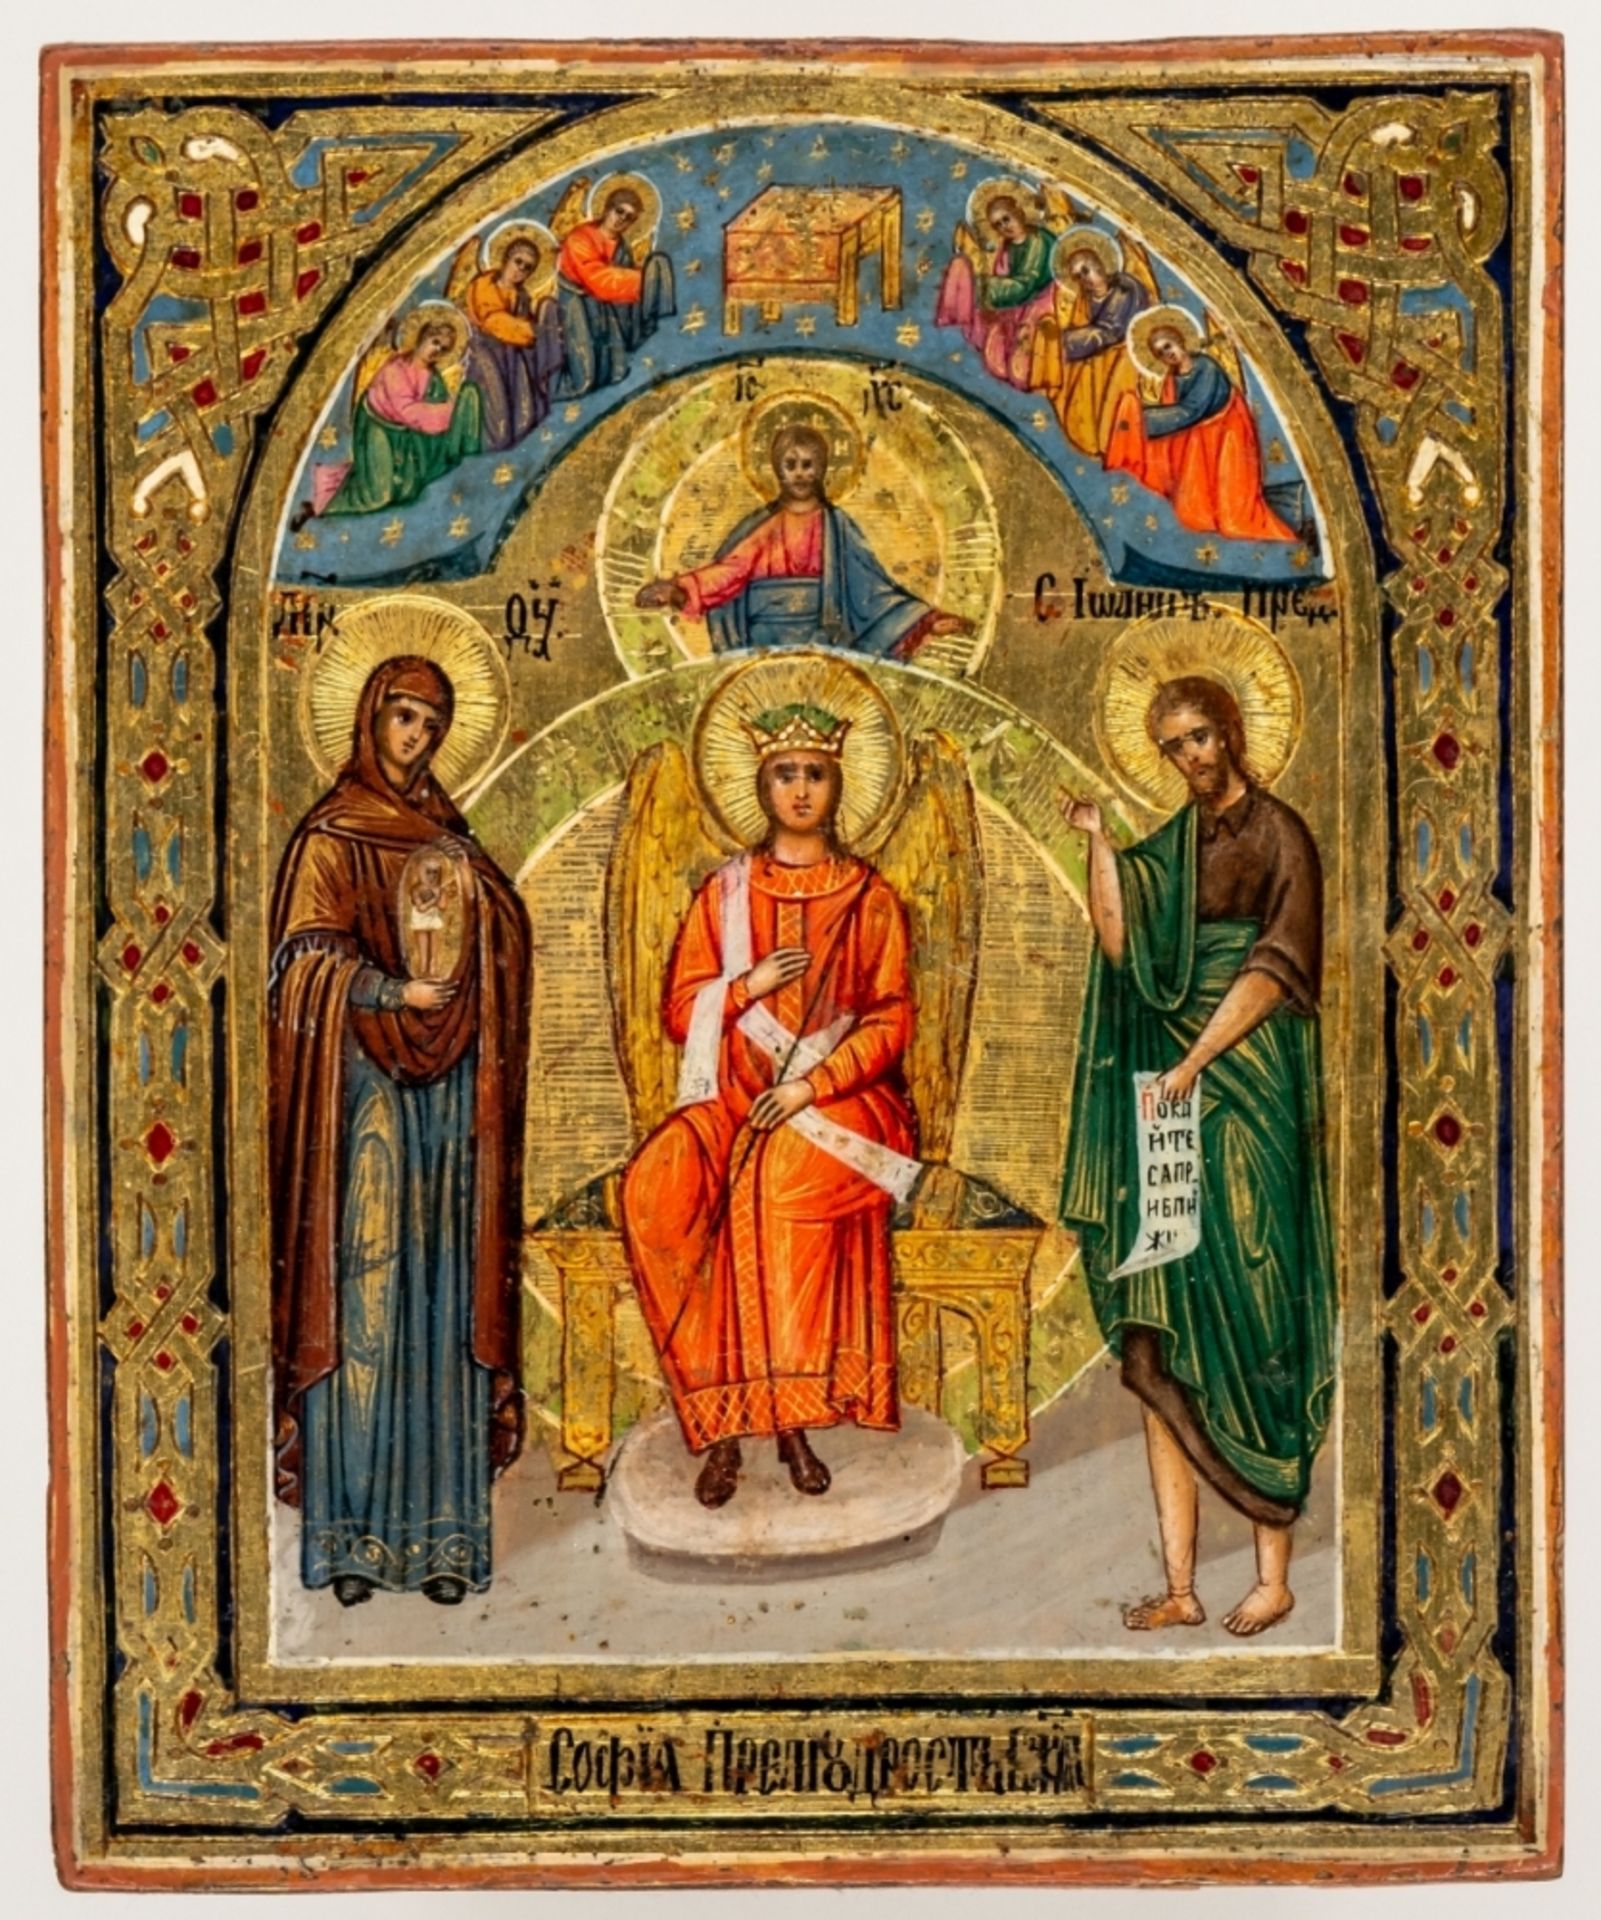 SOPHIA, DIE GÖTTLICHE WEISHEITRussische Ikone auf Goldgrund, verso datiert 190613,5 x 11 cmVerso ein